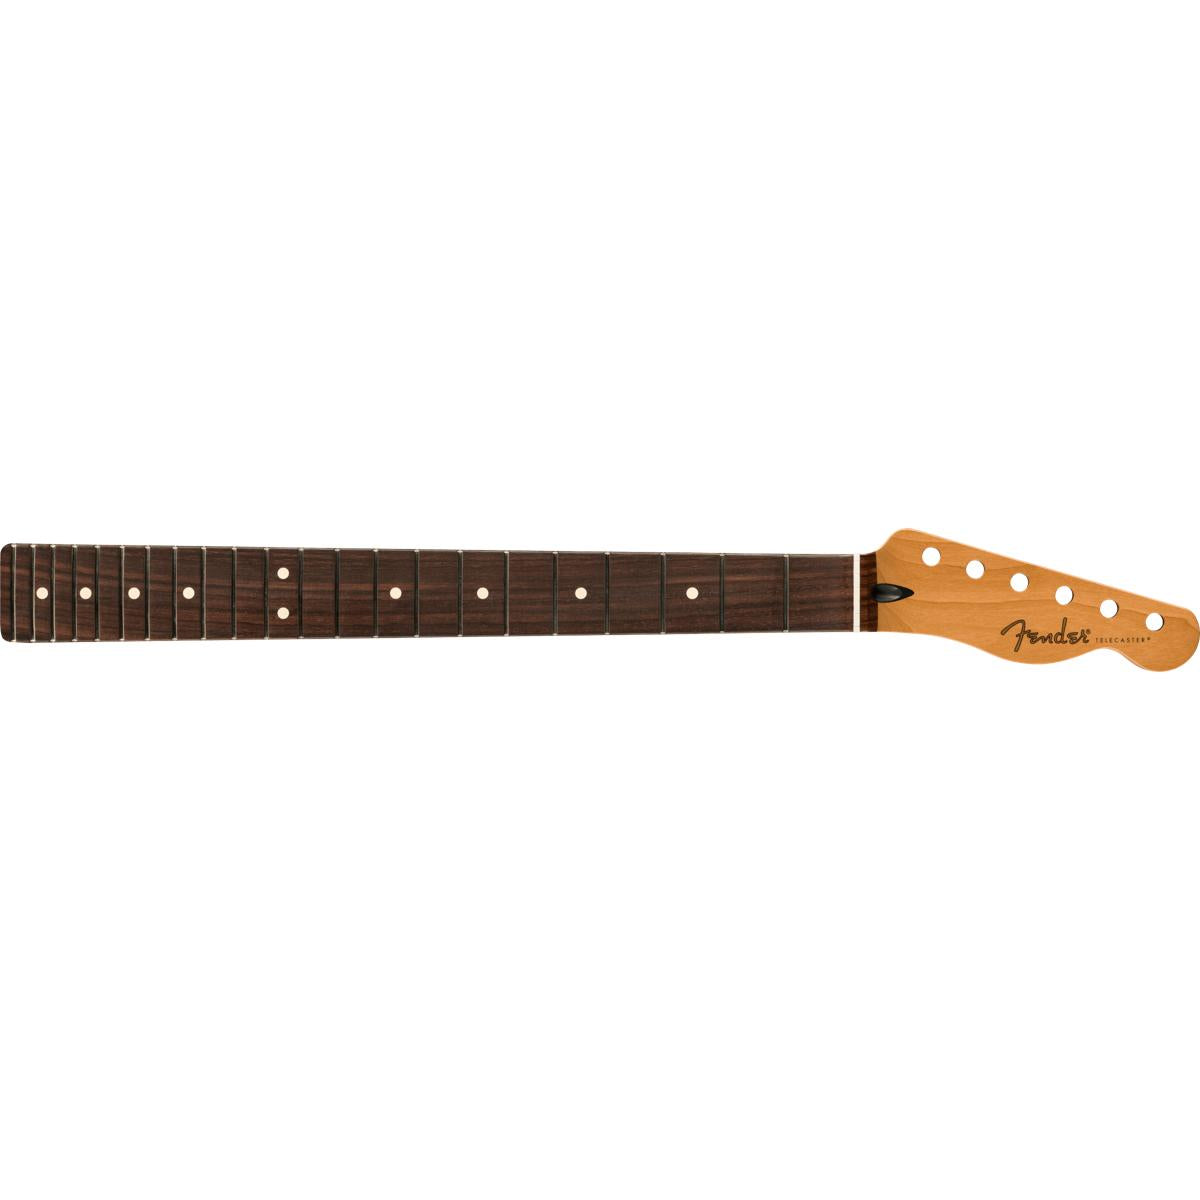 Fender Satin Roasted Maple Telecaster Neck 22 Jumbo Frets 12inch Radius Rosewood Flat Oval Shape - 0990393920